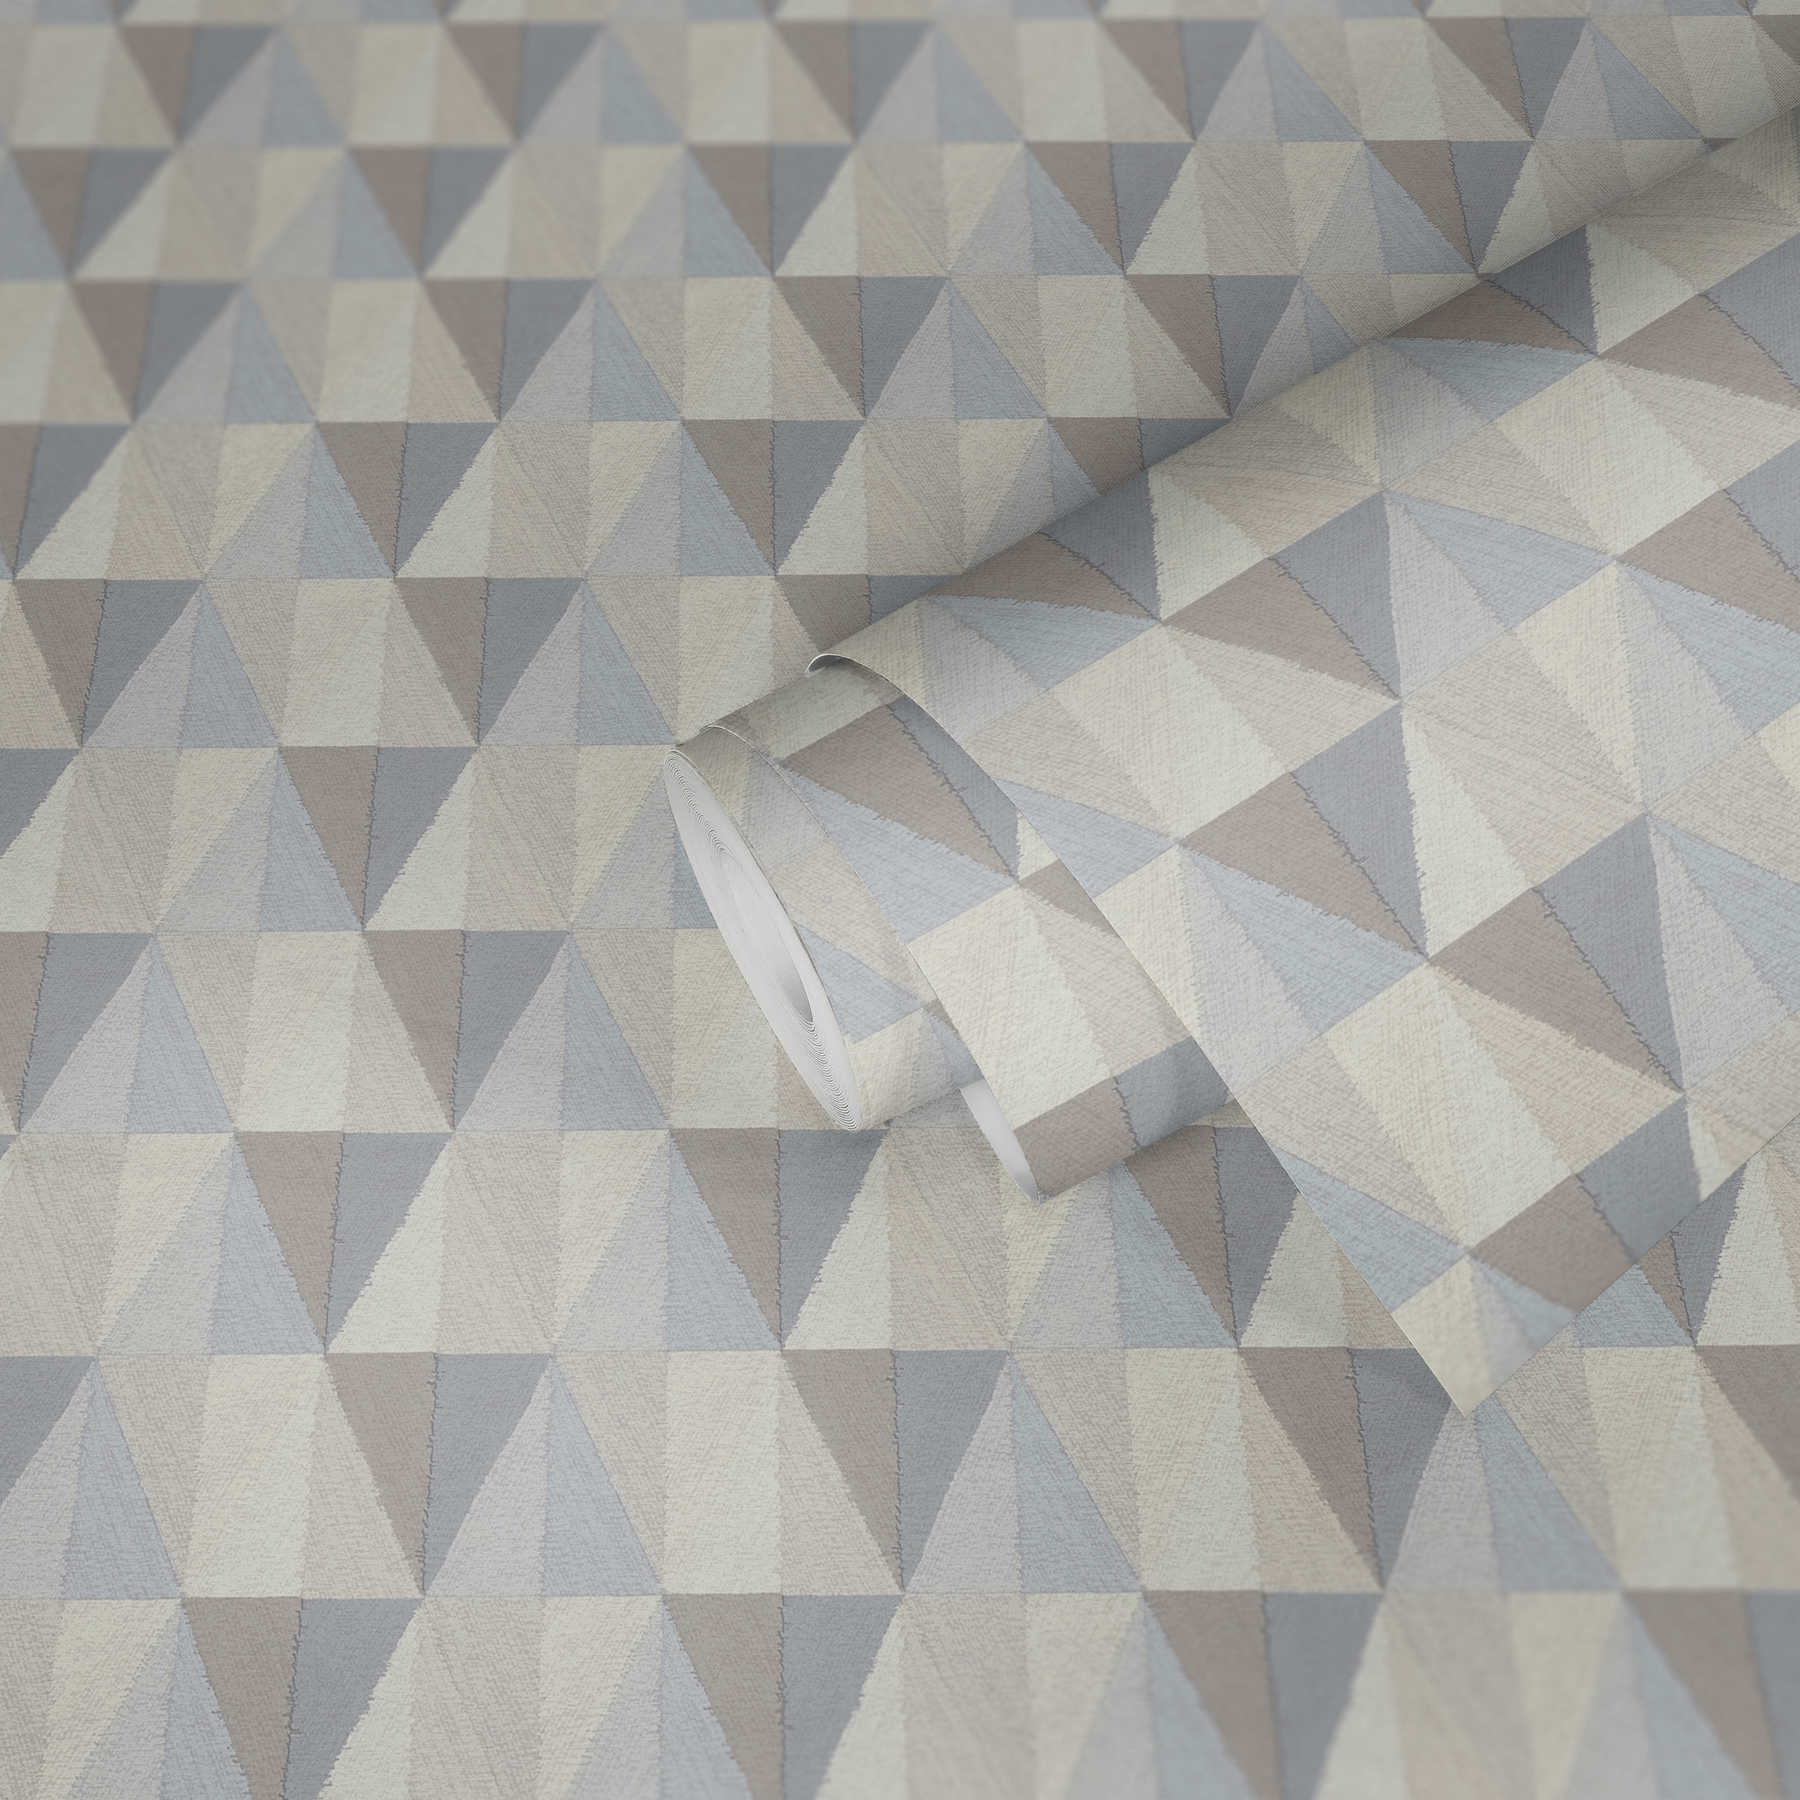             Tapete geometrisches Muster & Farbe-Facetten – Blau, Grau
        